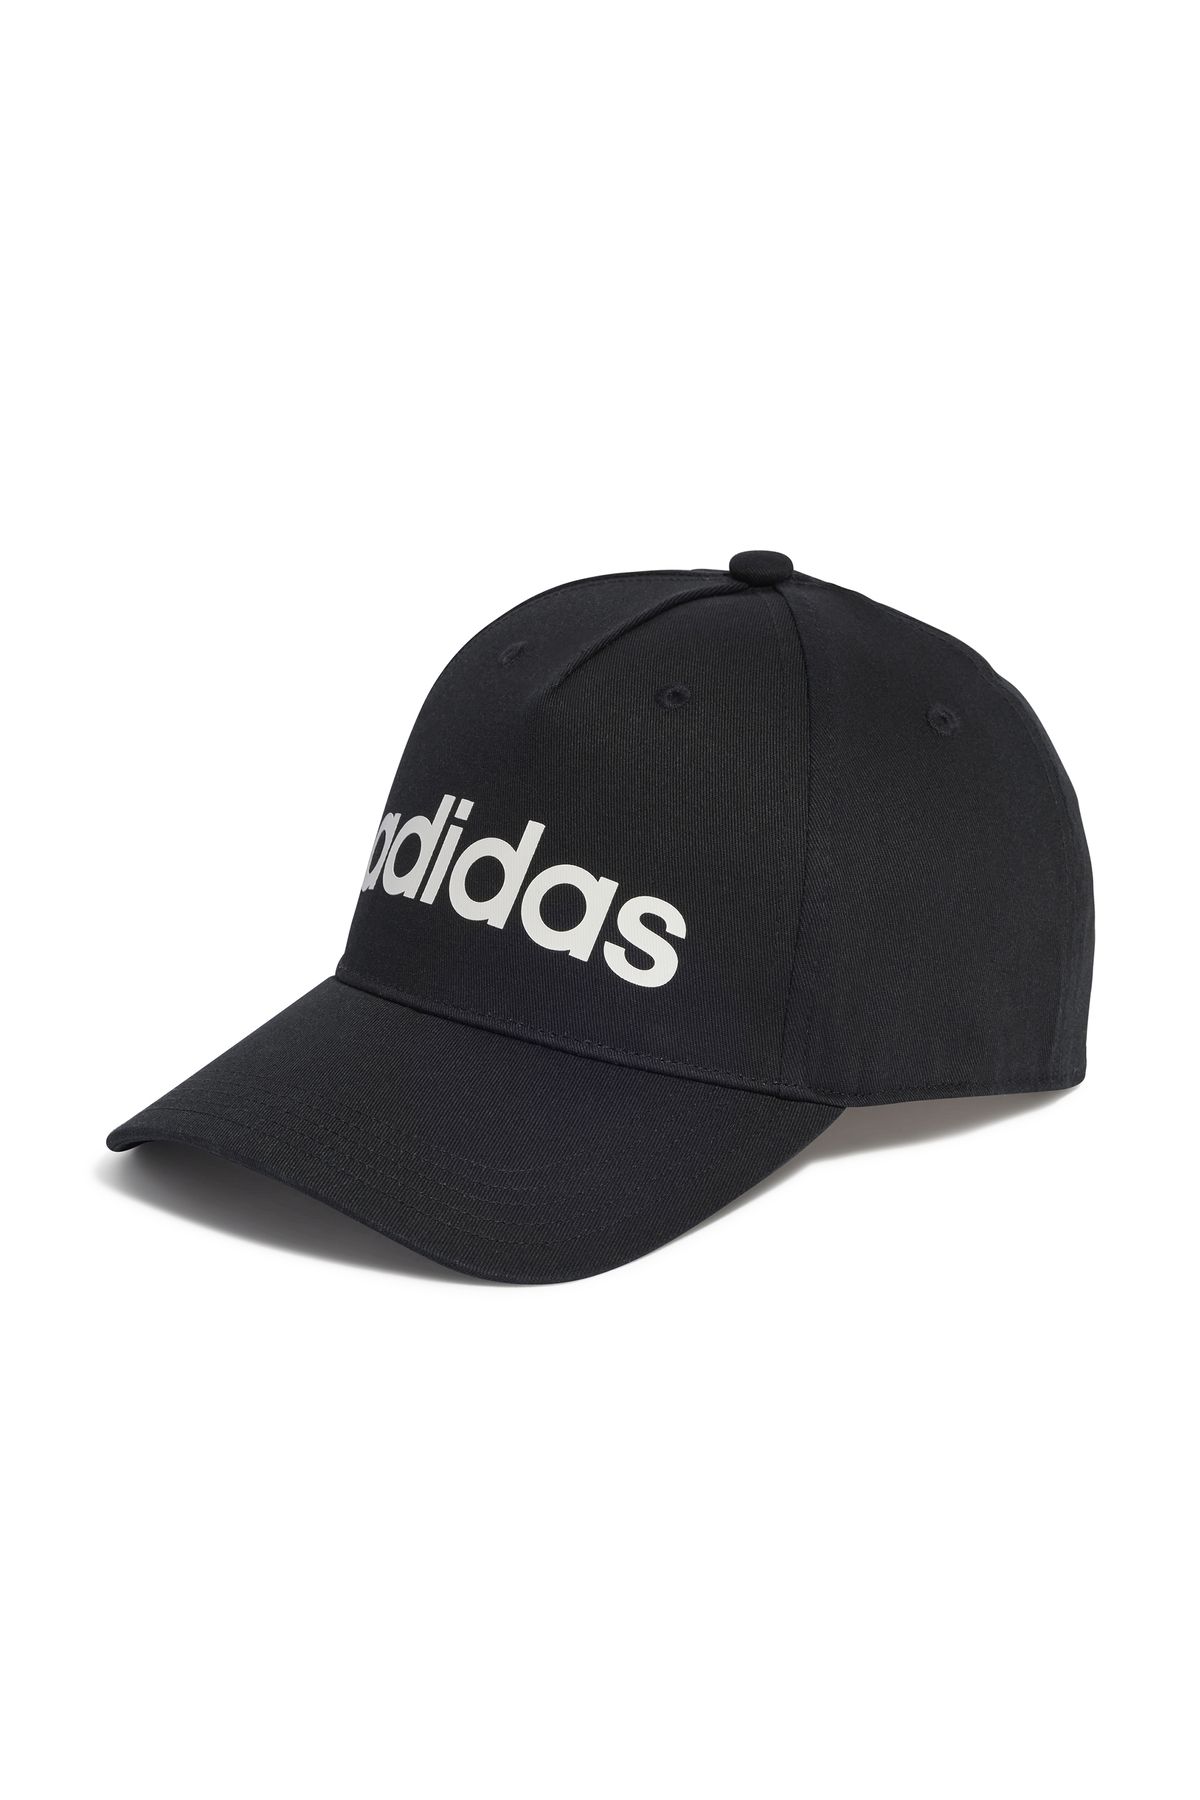 adidas کلاه روزانه ht6356 سیاه